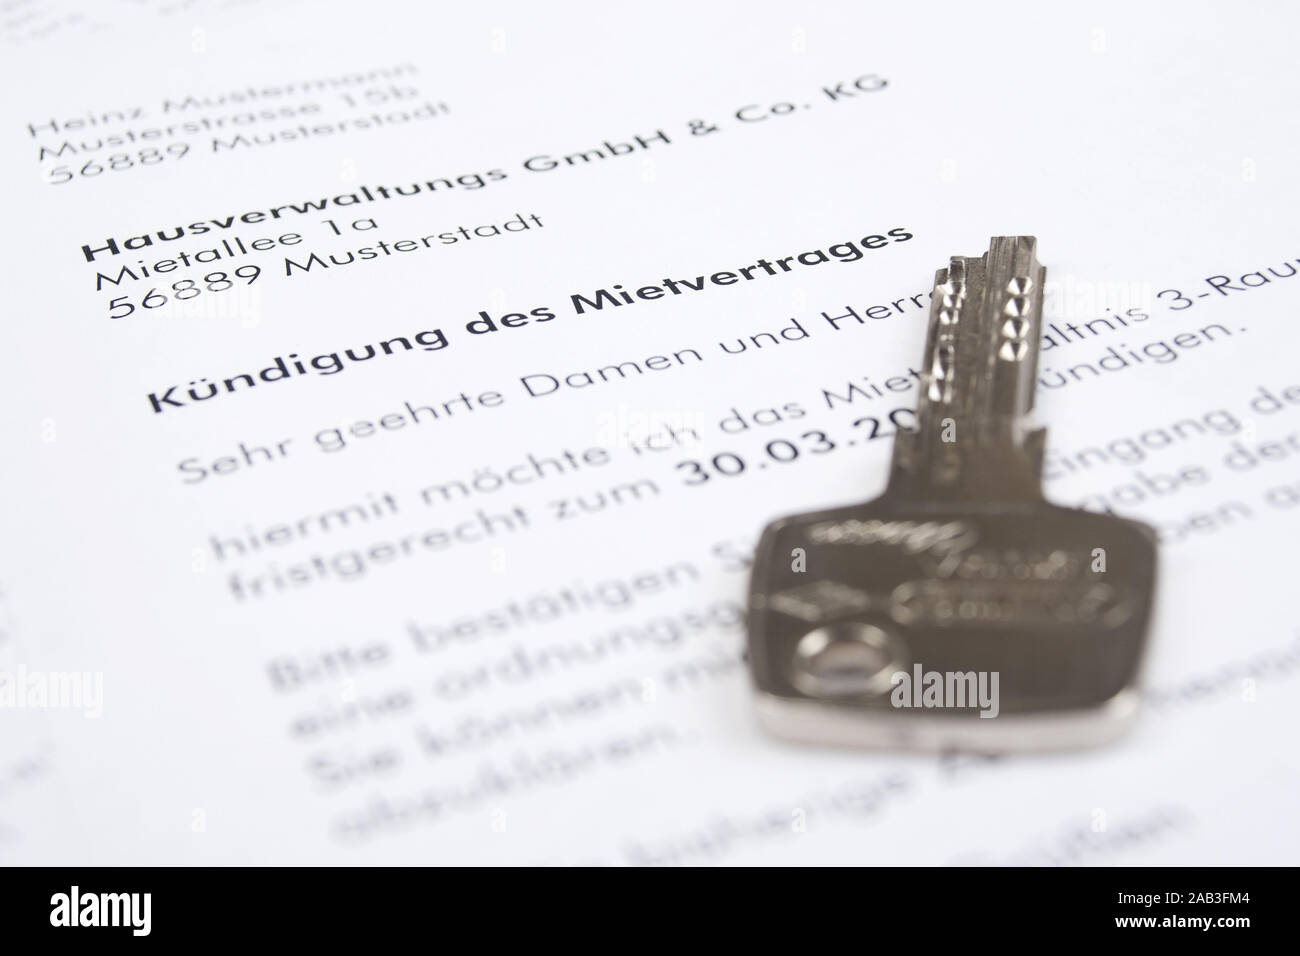 Schriftliche Kuendigung eines Mietvertrages mit einem Schluessel |Written notice of termination of a tenancy agreement with a key| Stock Photo